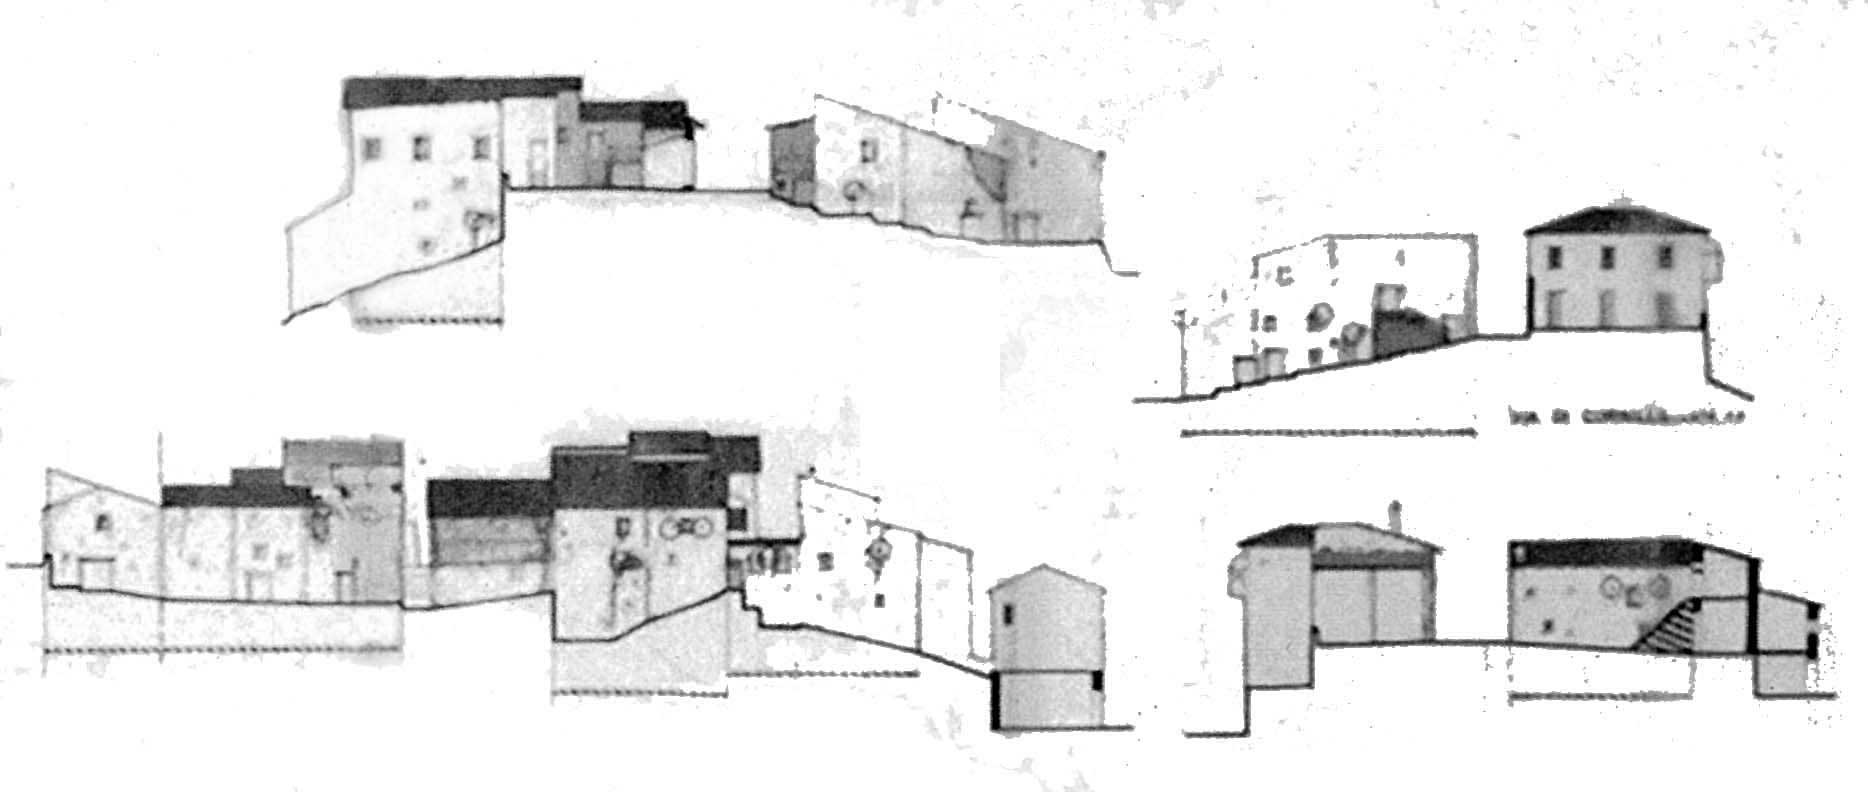 11 - Piano di Recupero del patrimonio edilizio esistente del Comune di Vallo di Nera (PG); con L. Triggiani e S. Terenzi - Profili della località Meggiano